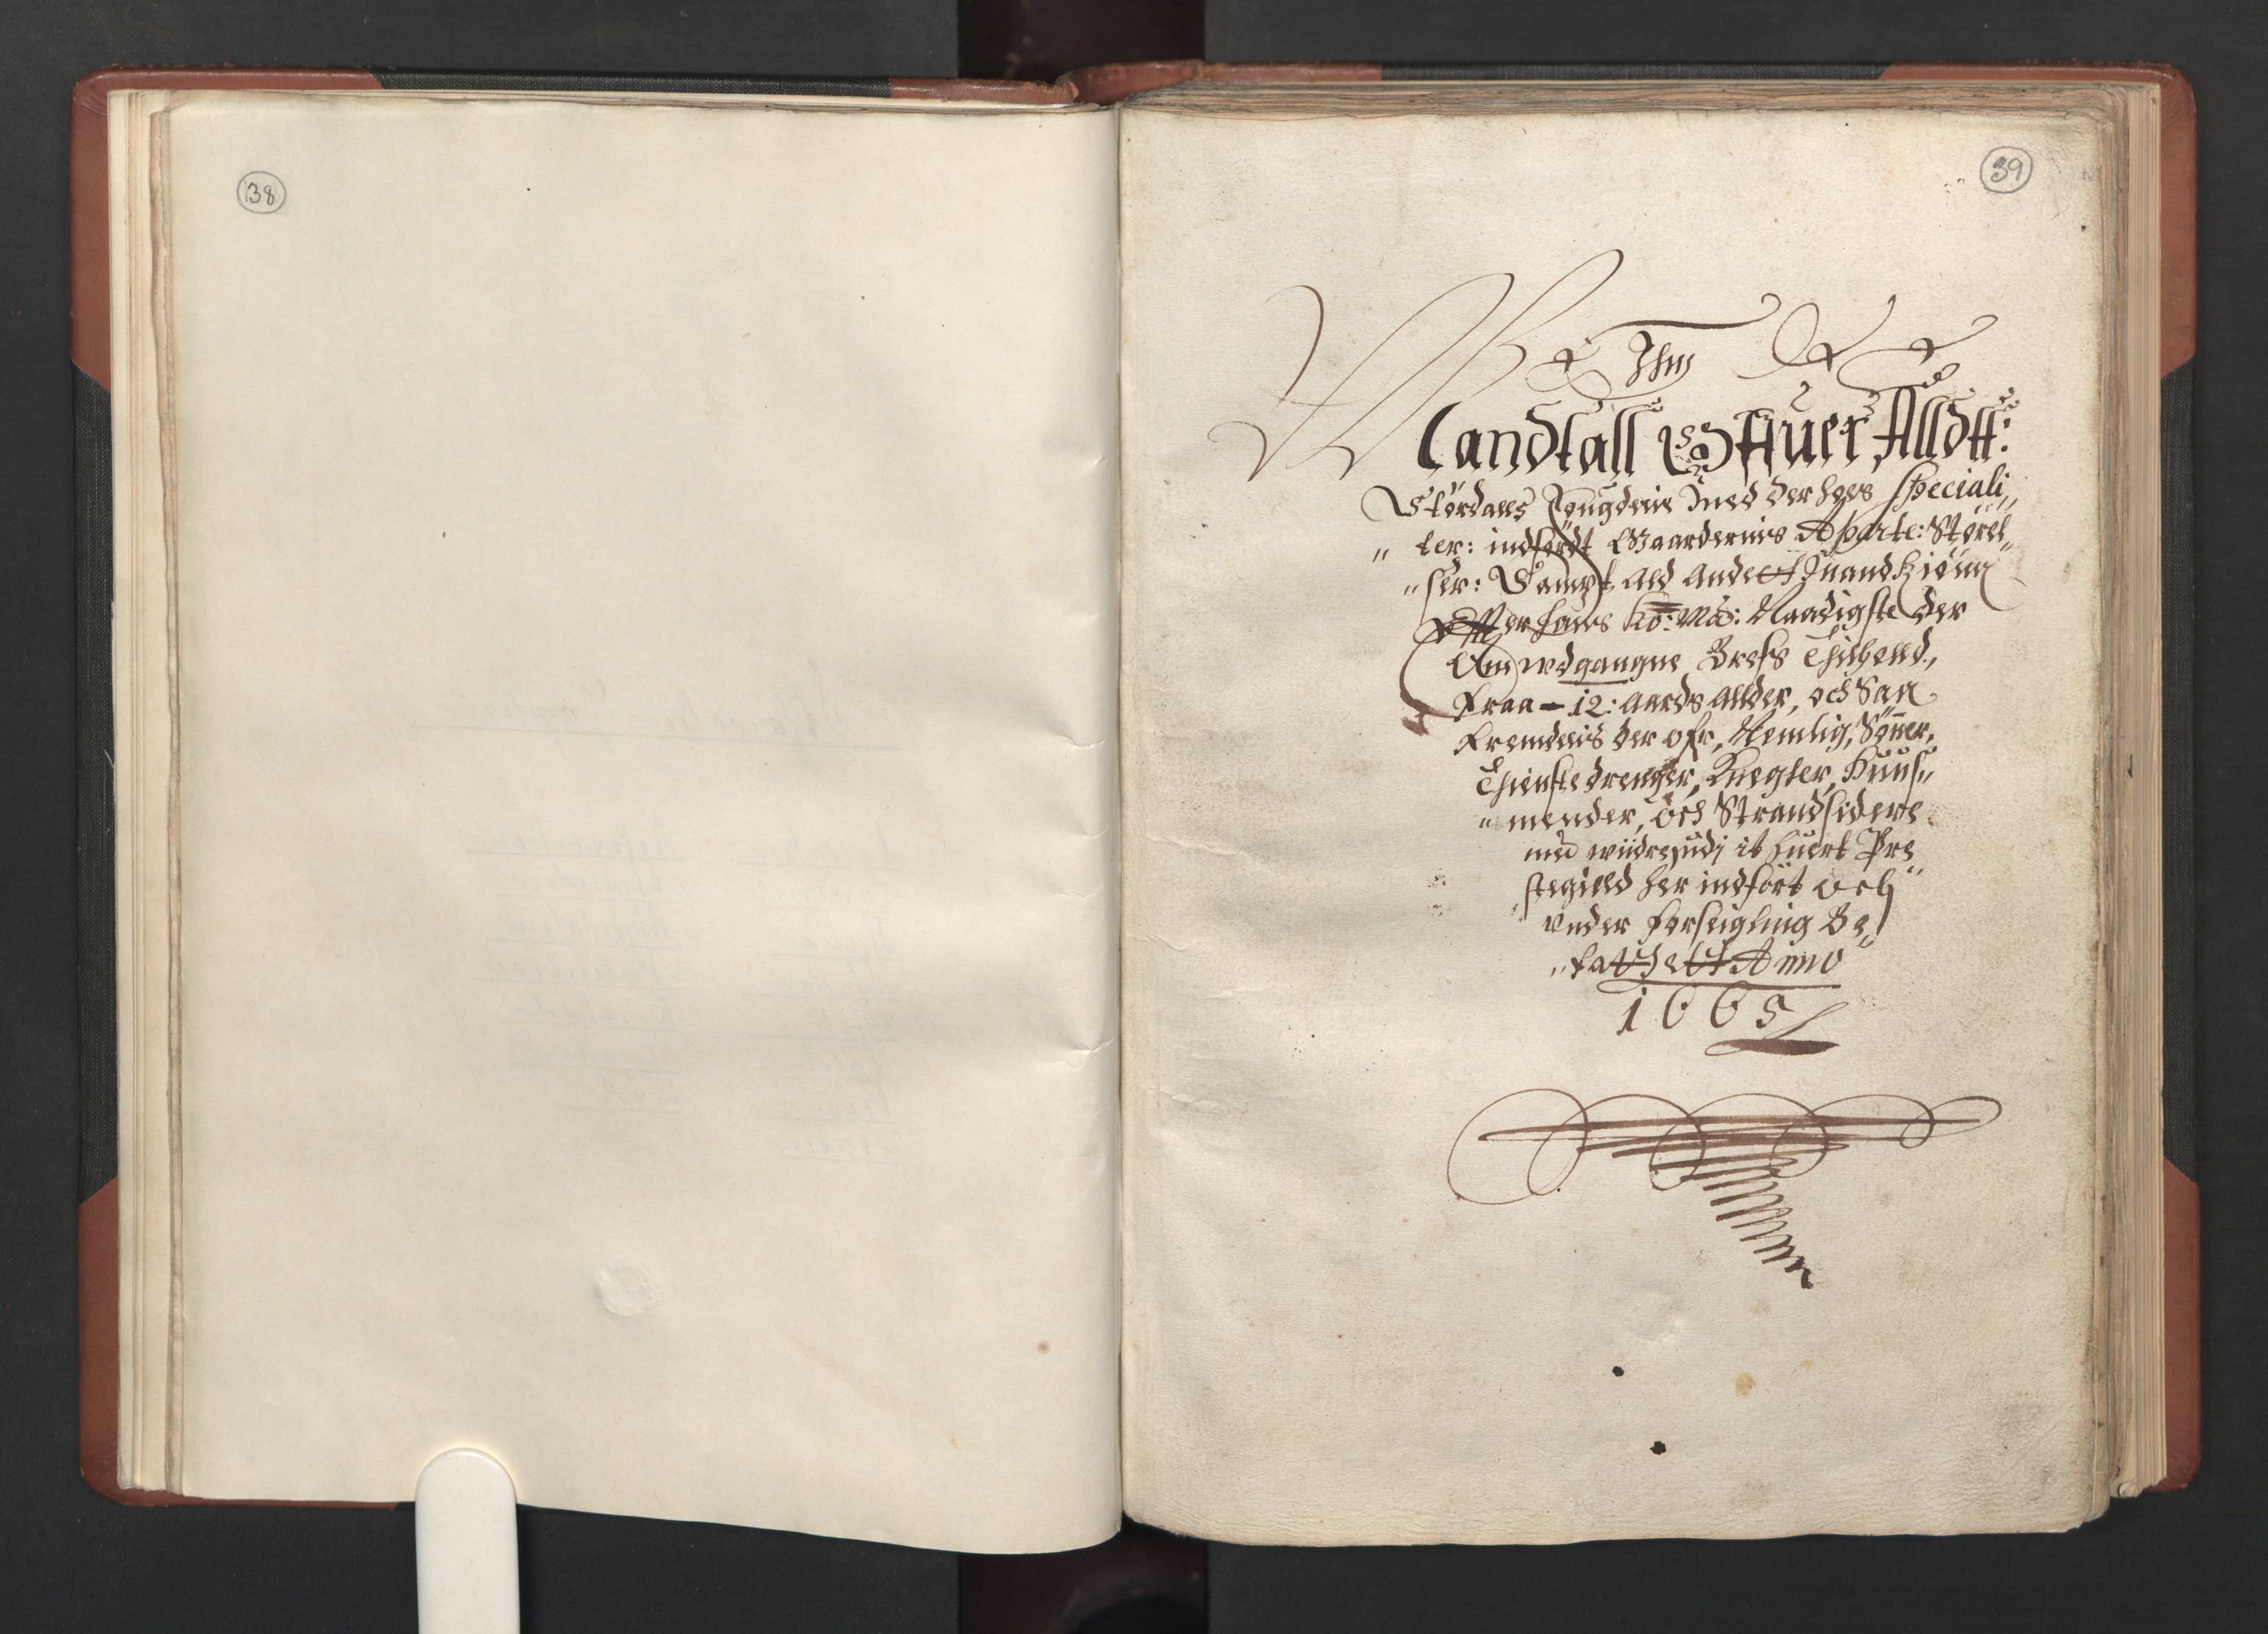 RA, Fogdenes og sorenskrivernes manntall 1664-1666, nr. 19: Fosen fogderi, Inderøy fogderi, Selbu fogderi, Namdal fogderi og Stjørdal fogderi, 1664-1665, s. 38-39